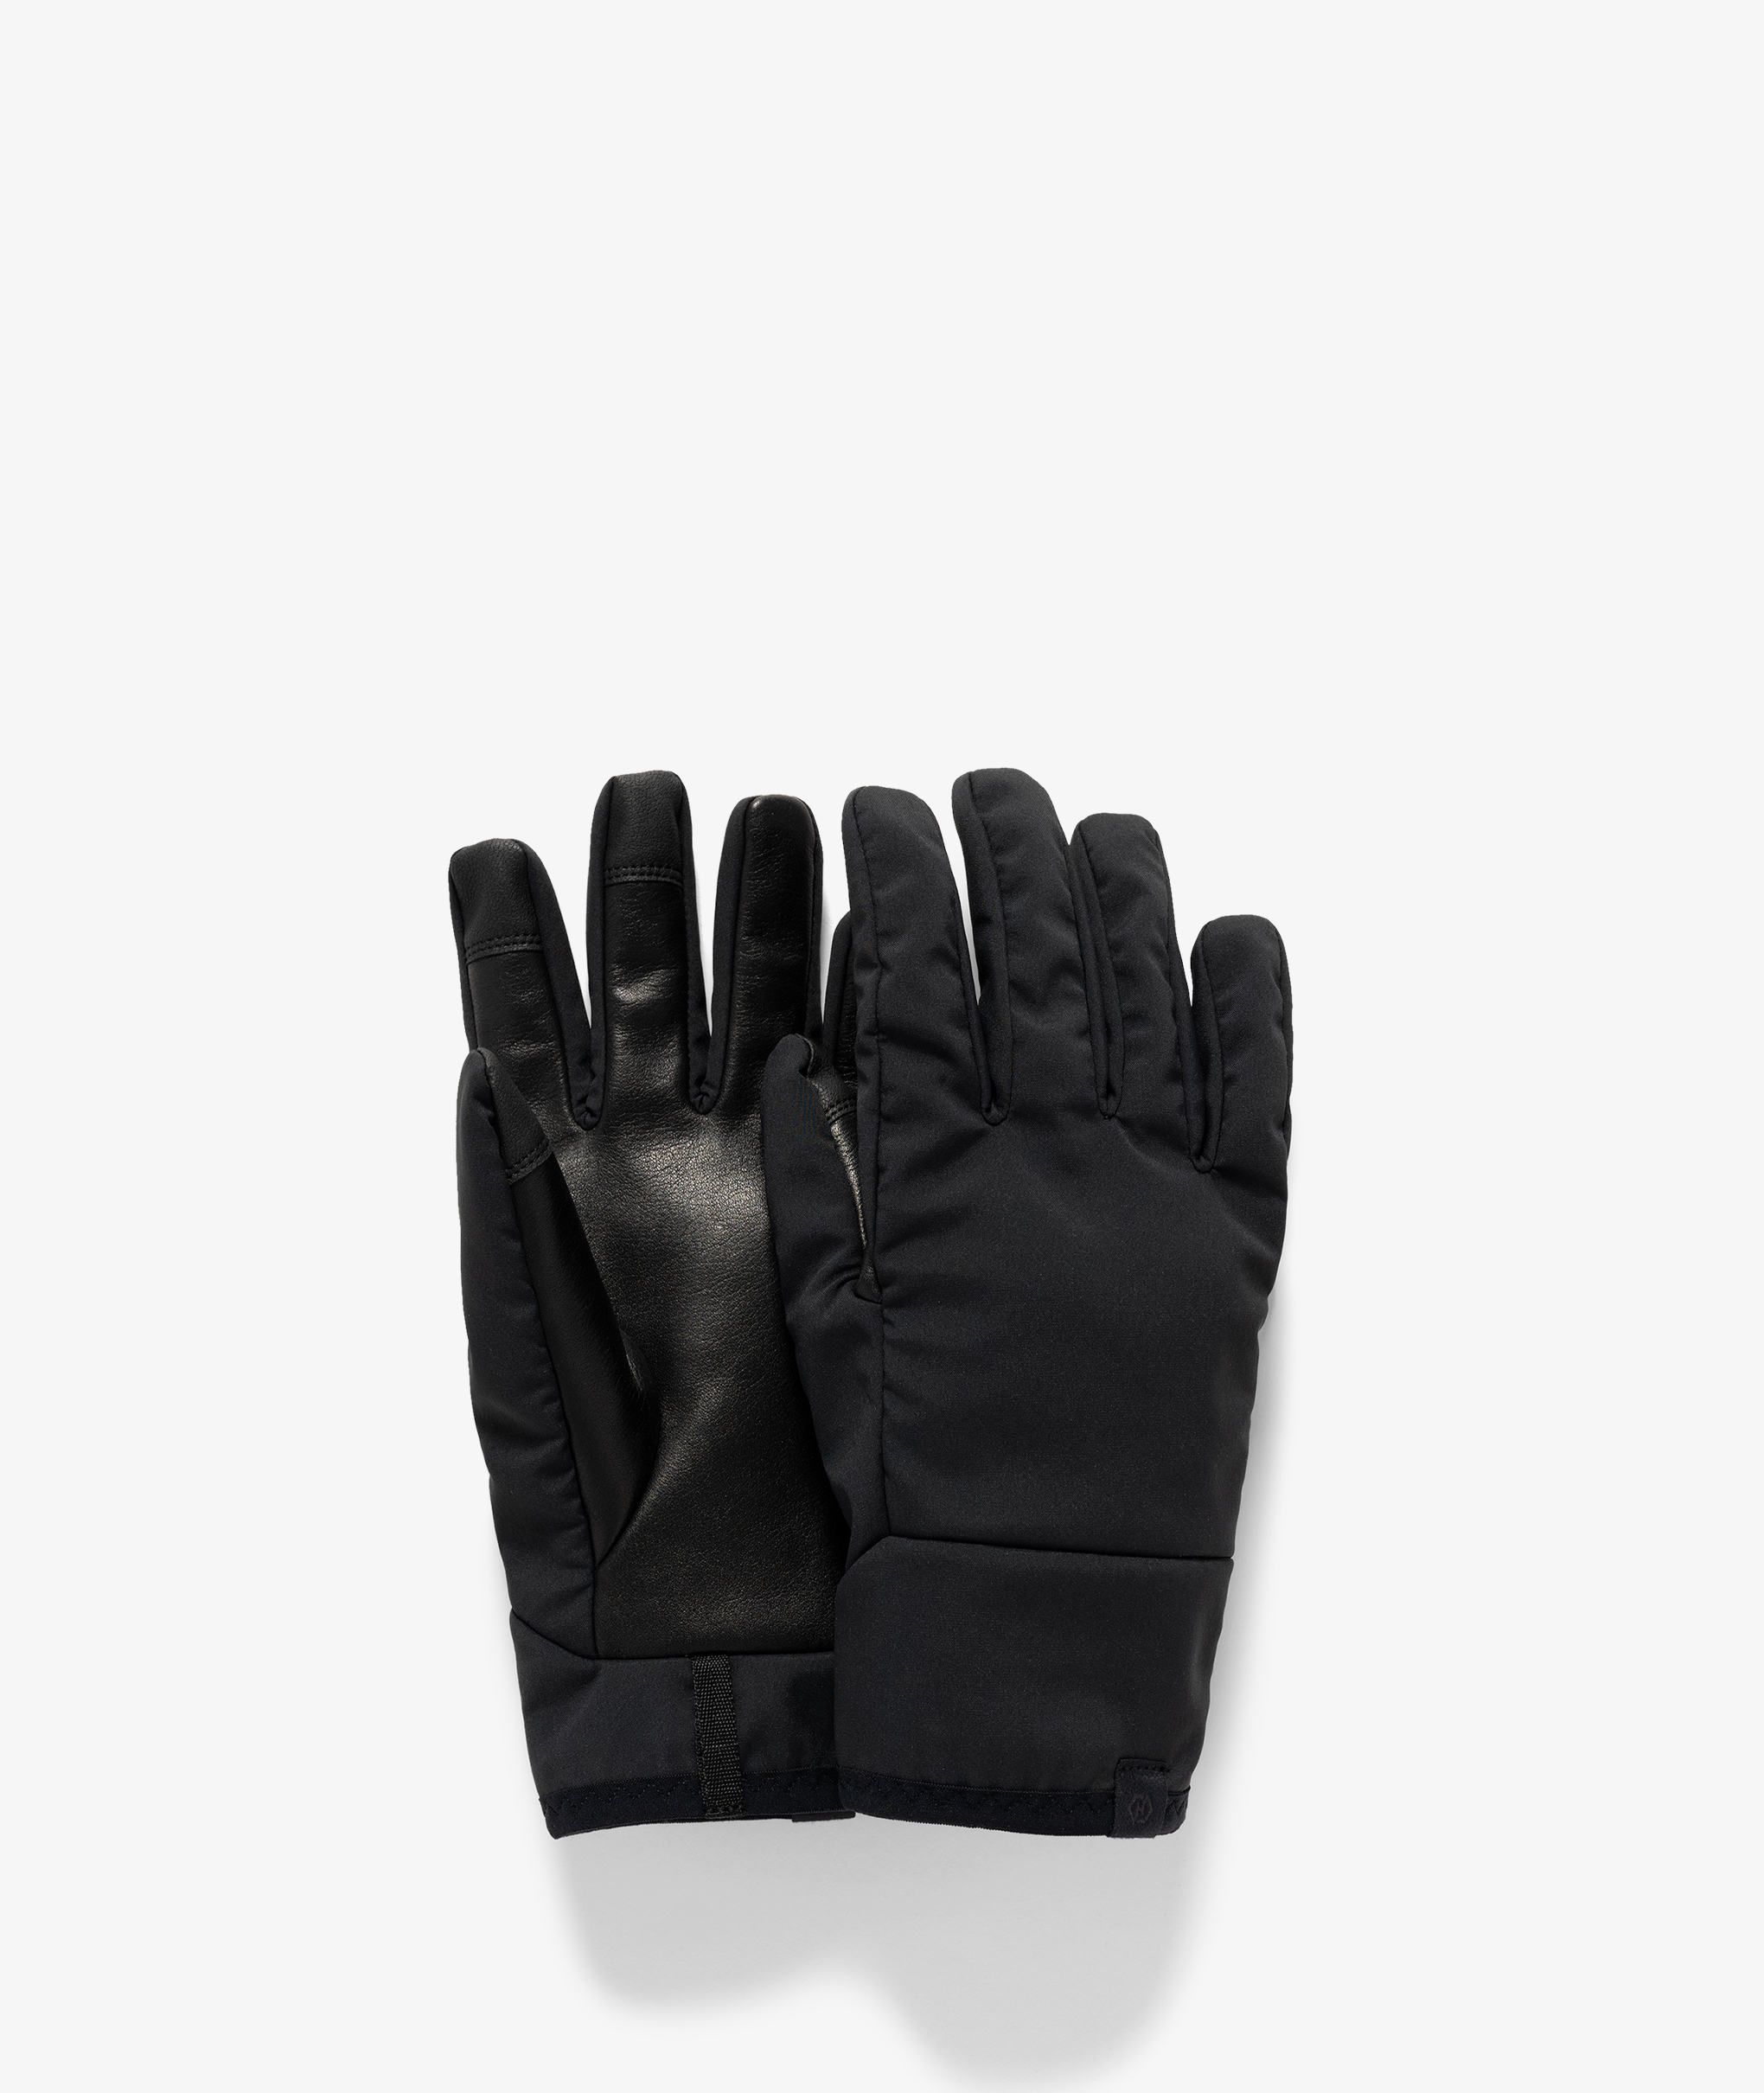 converteerbaar Wonderbaarlijk Strippen Norse Store | Shipping Worldwide - Haven Alpine Glove - Black